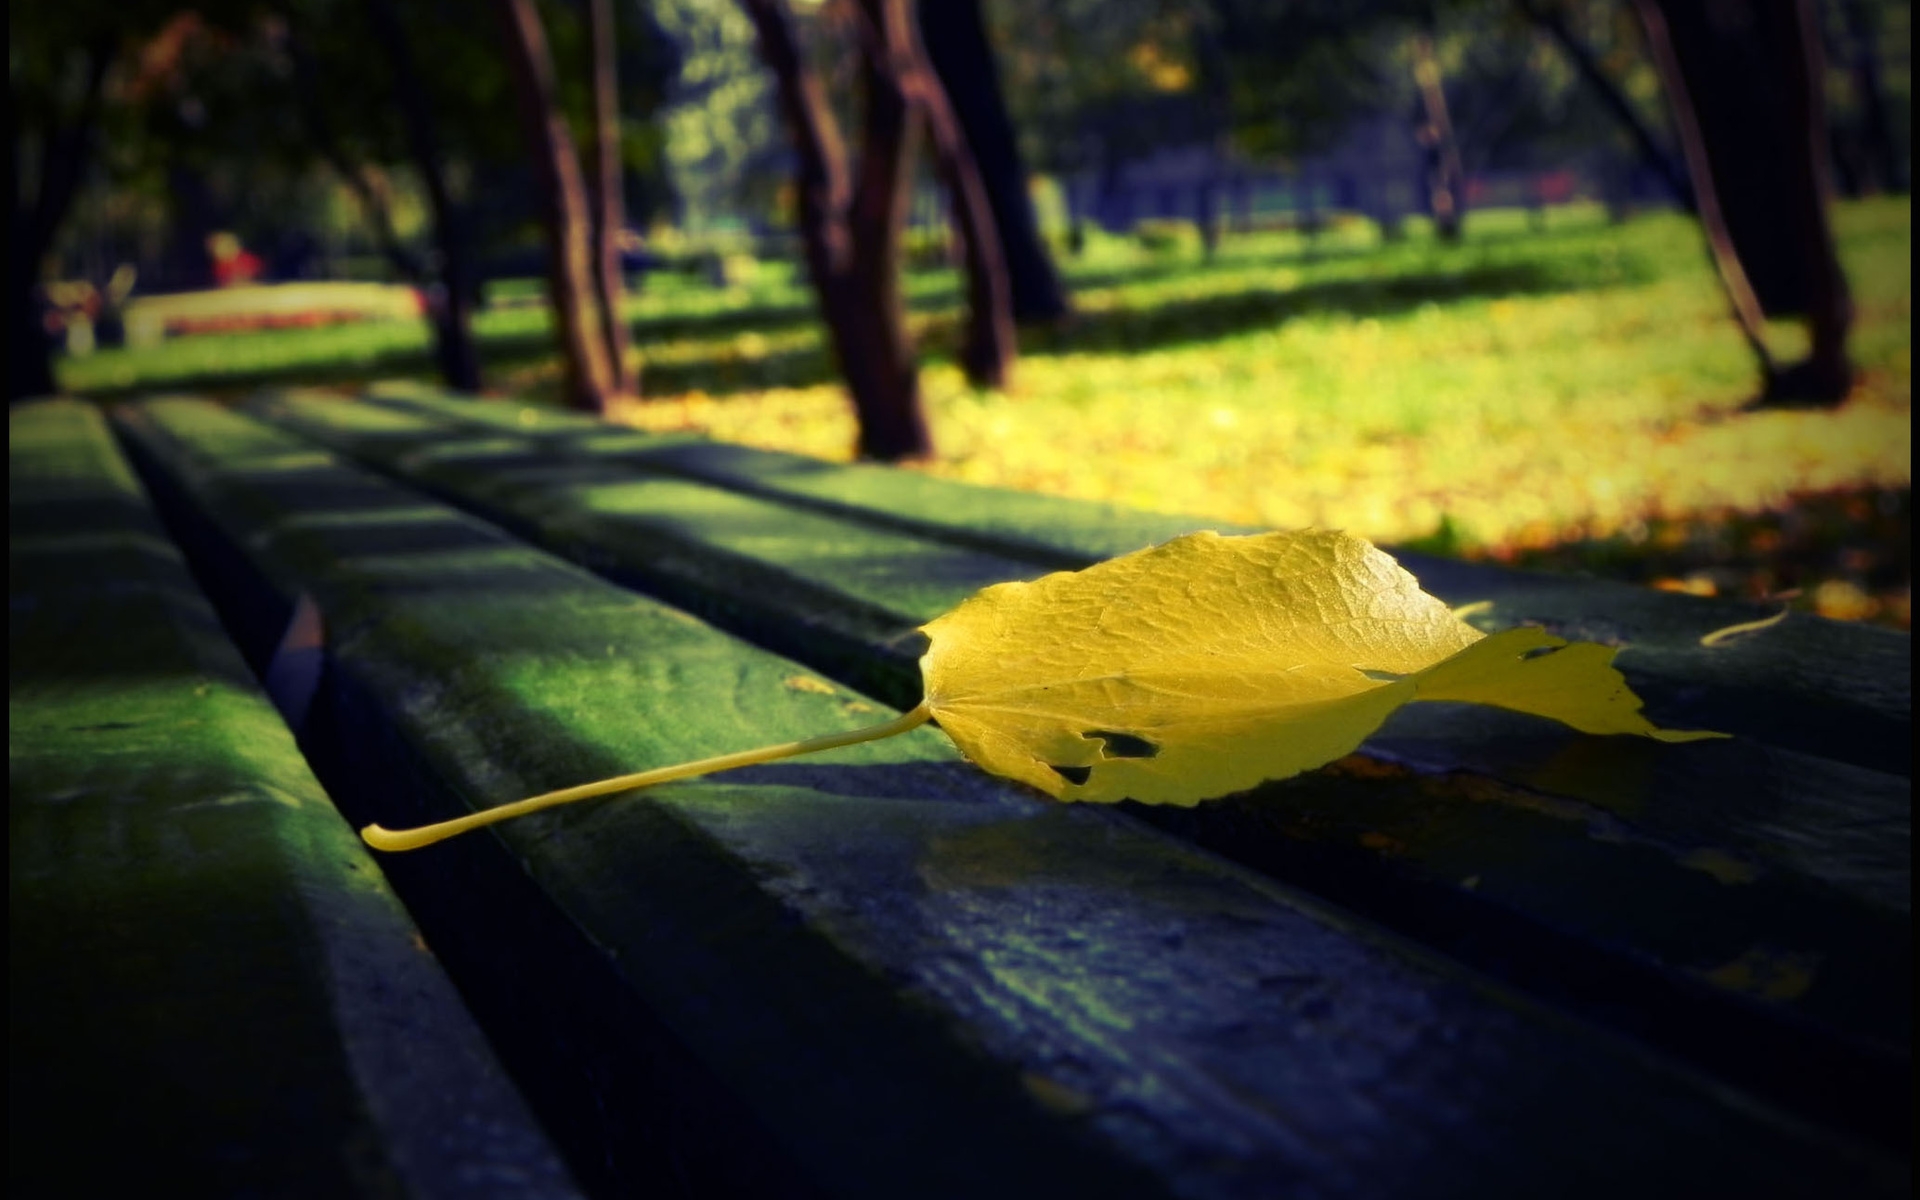 осенний сад промокшая скамейка и листья подметает